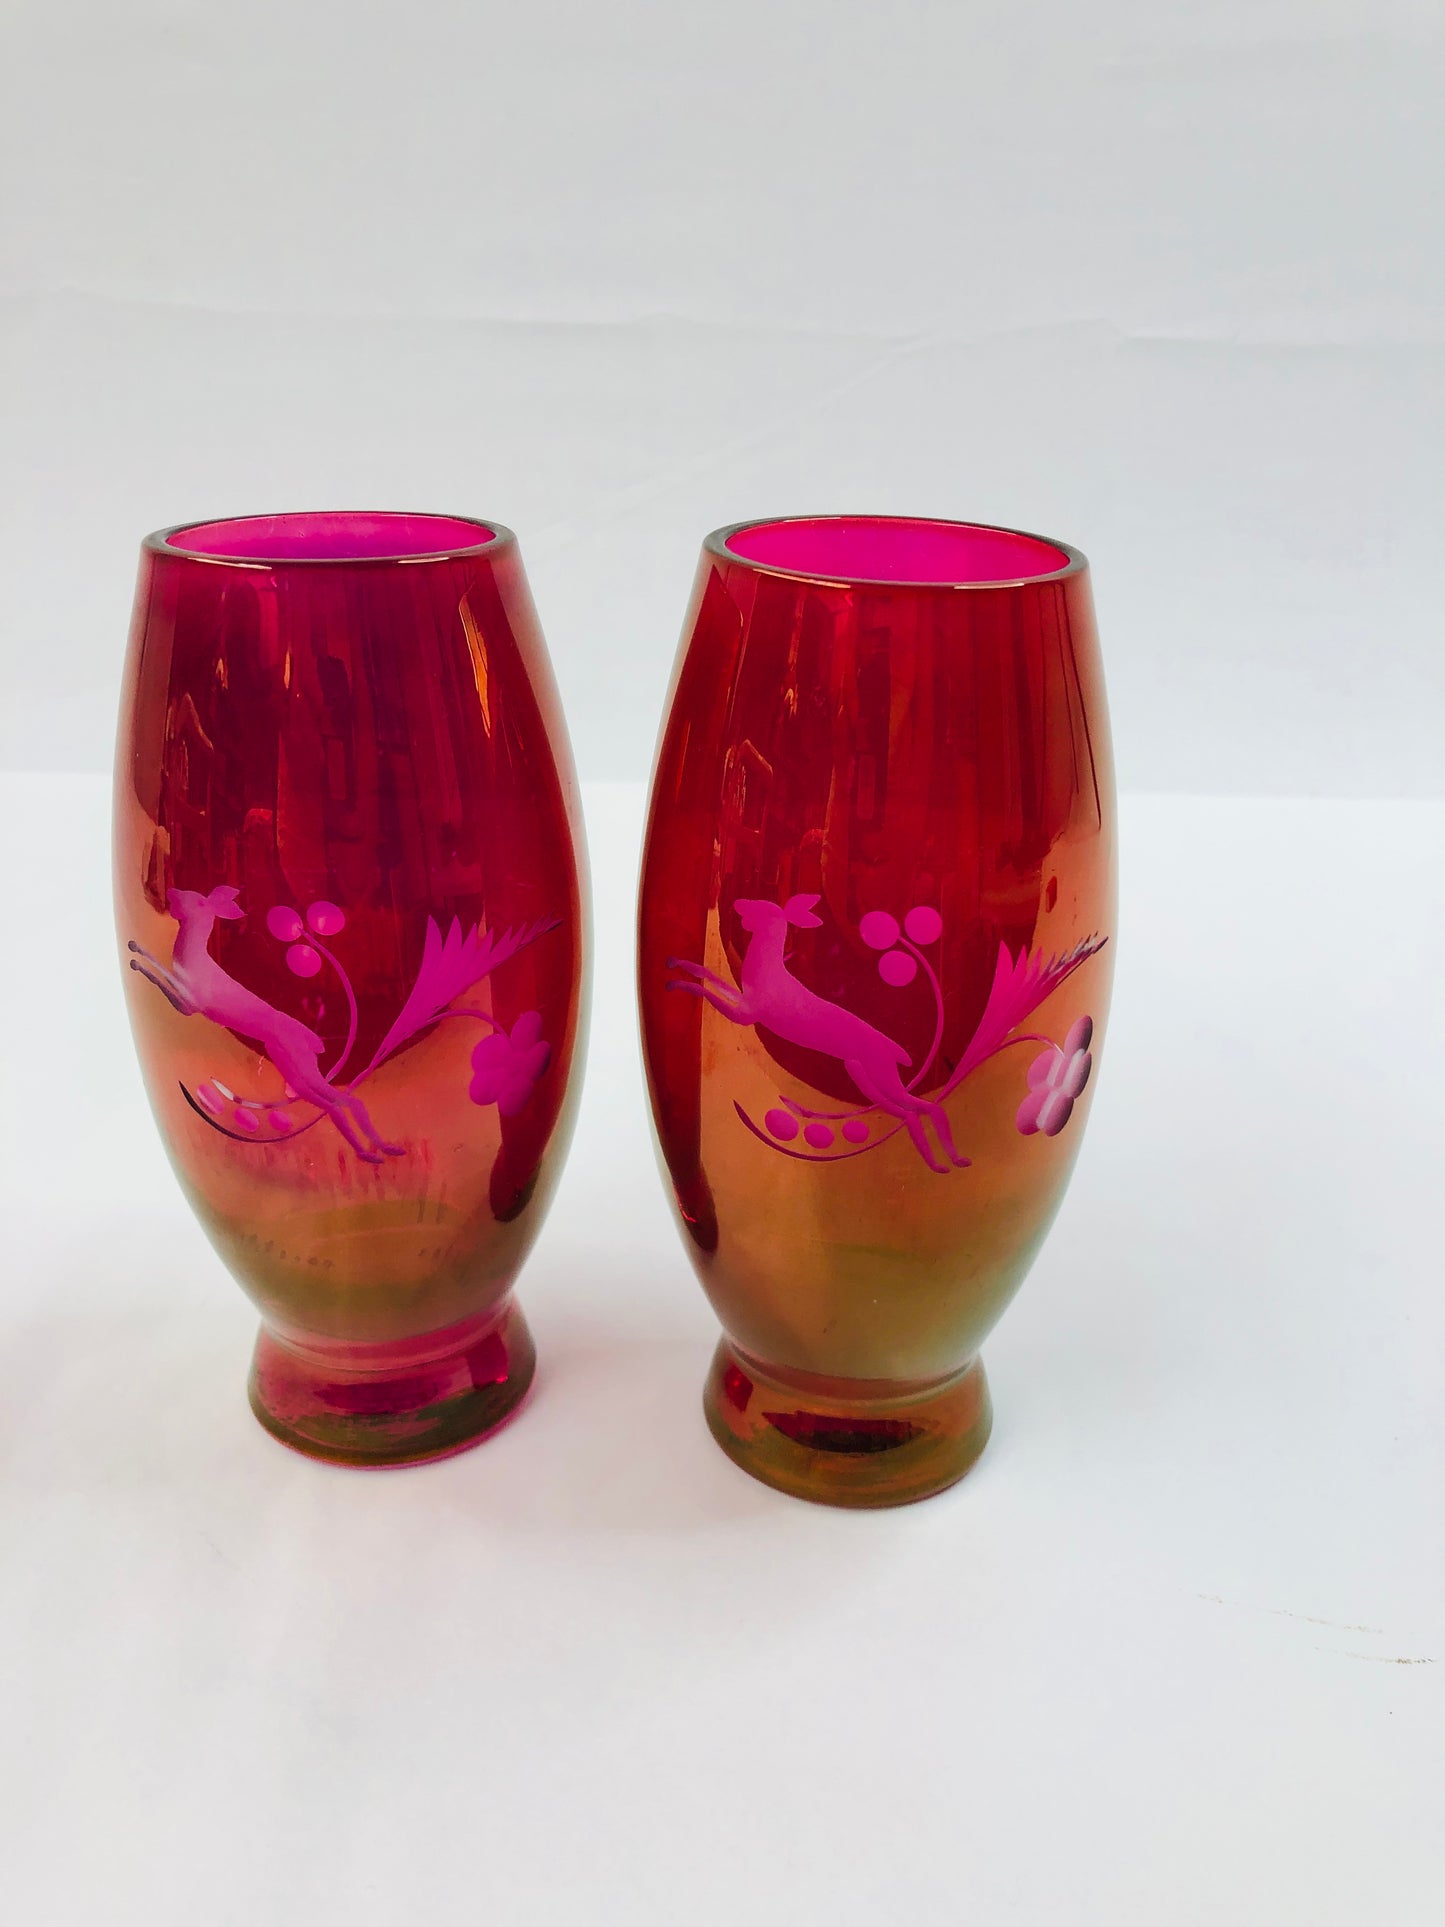 
                  
                    Stunning Vintage Red/Pink Vases (16138)
                  
                